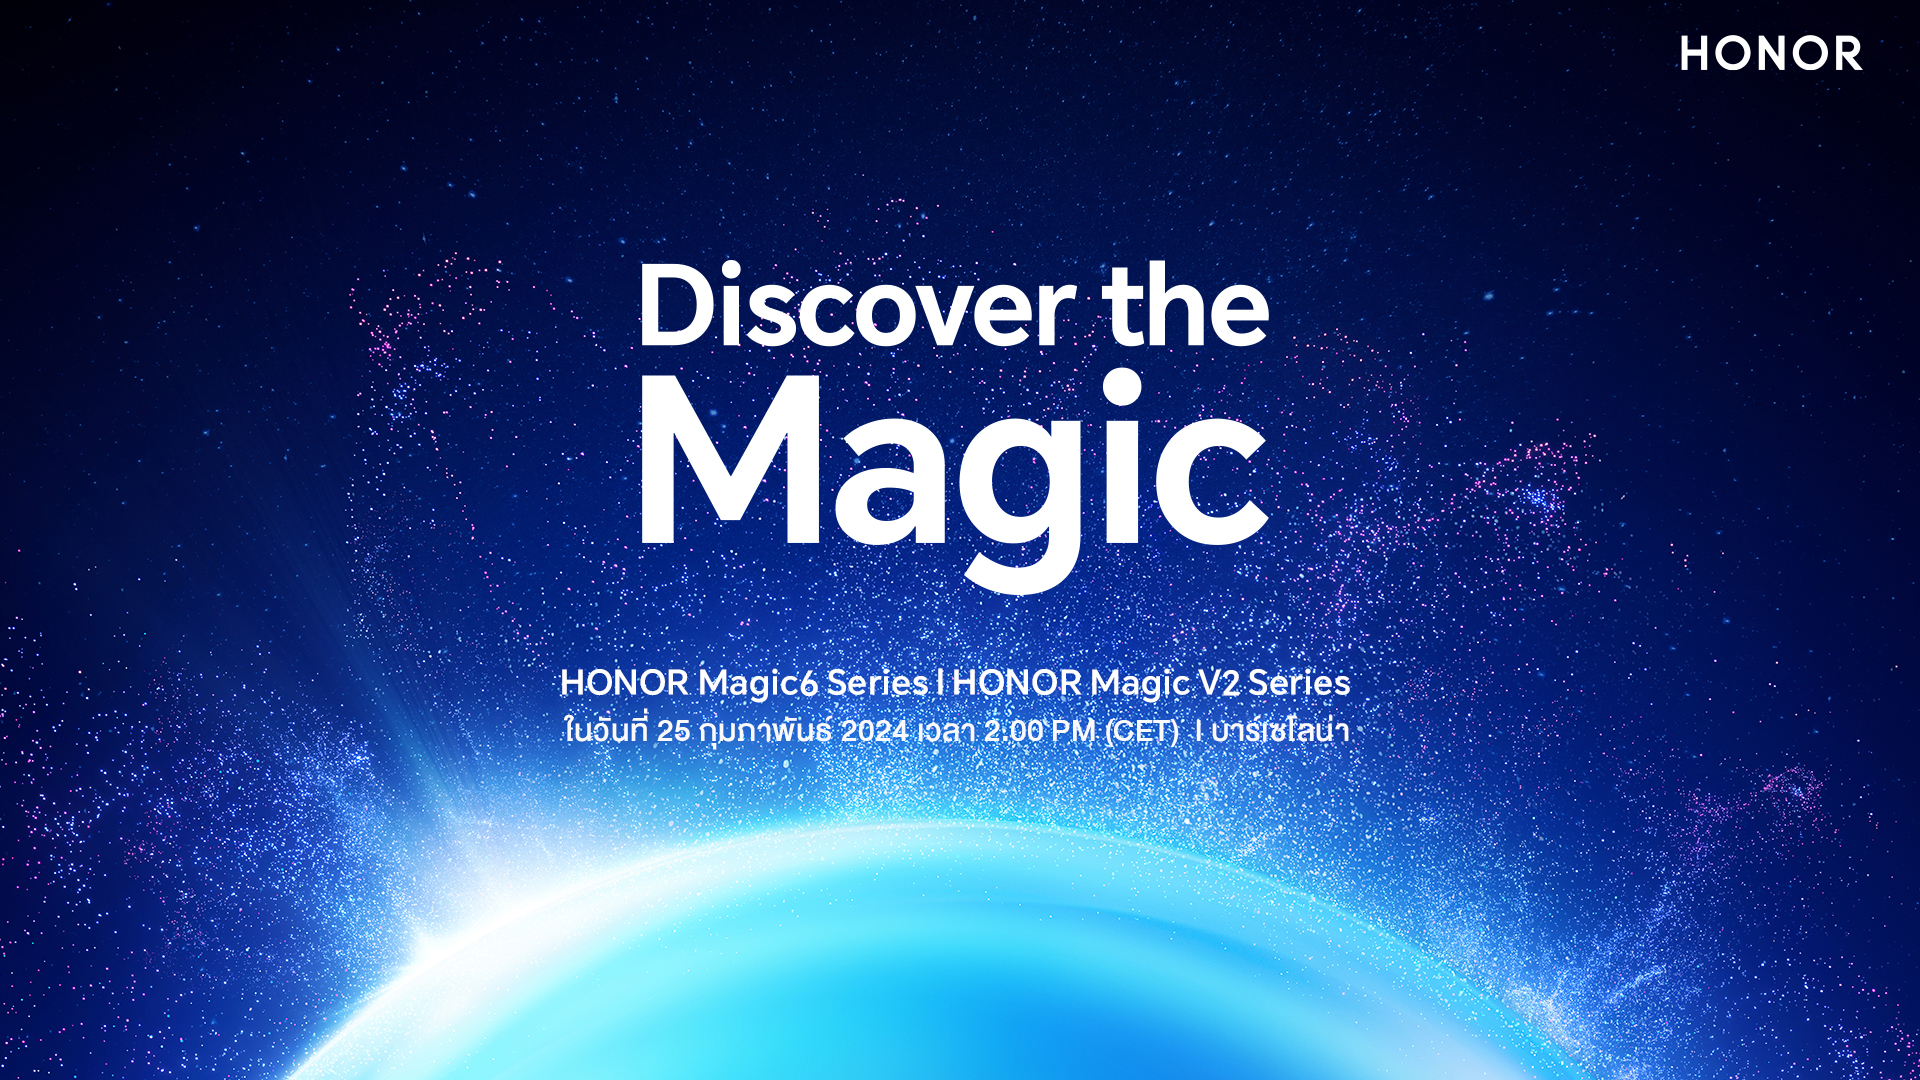 HONOR Magic 6 Series